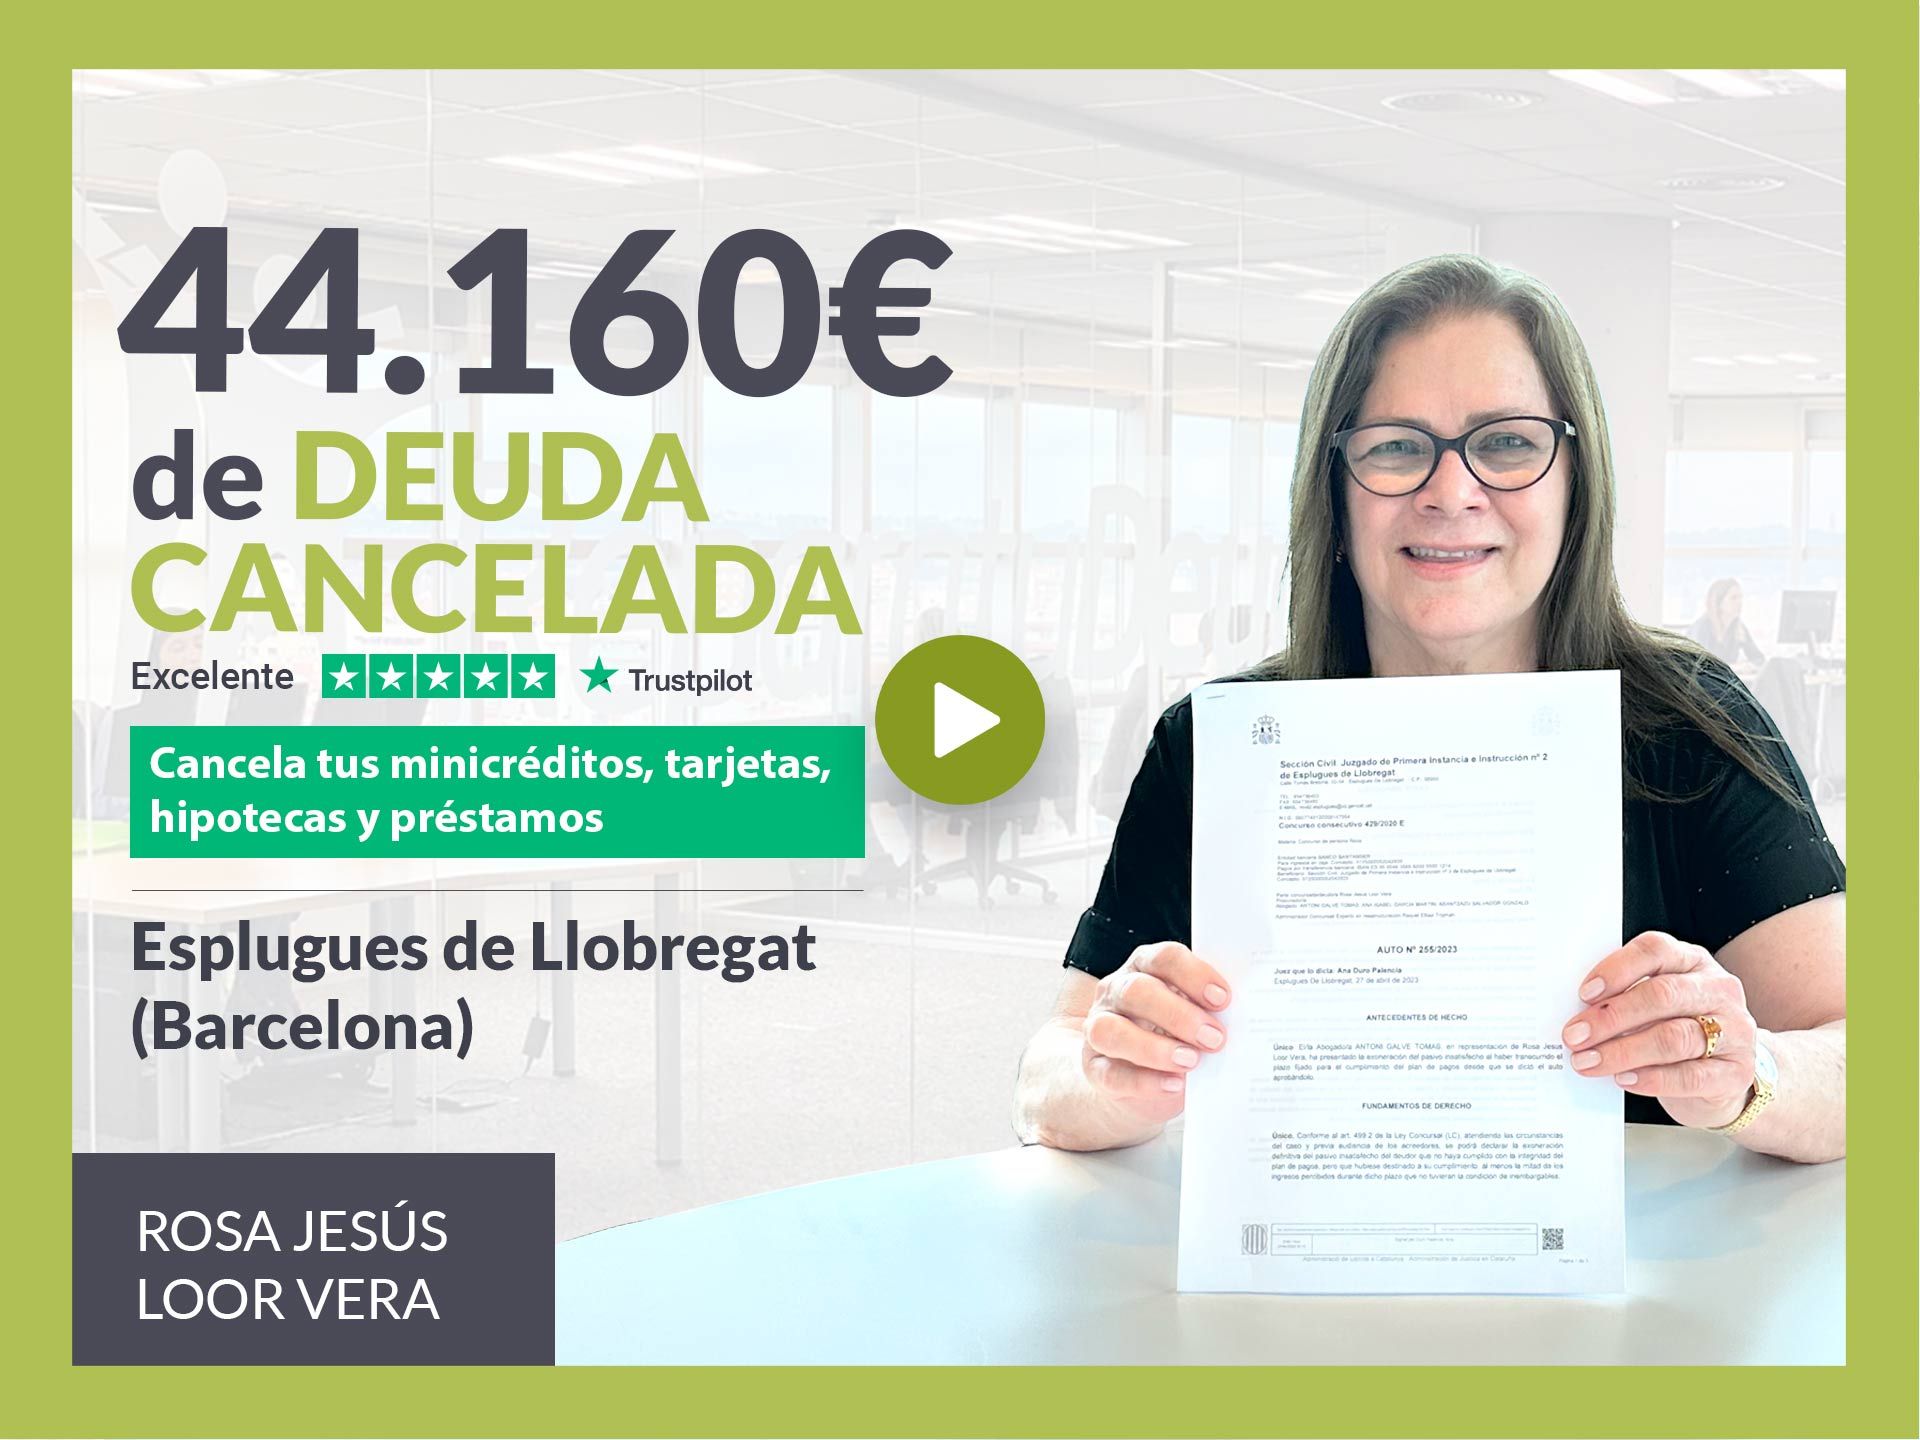 Repara tu Deuda cancela 44.160? en Esplugues de Llobregat (Barcelona) con la Ley de Segunda Oportunidad